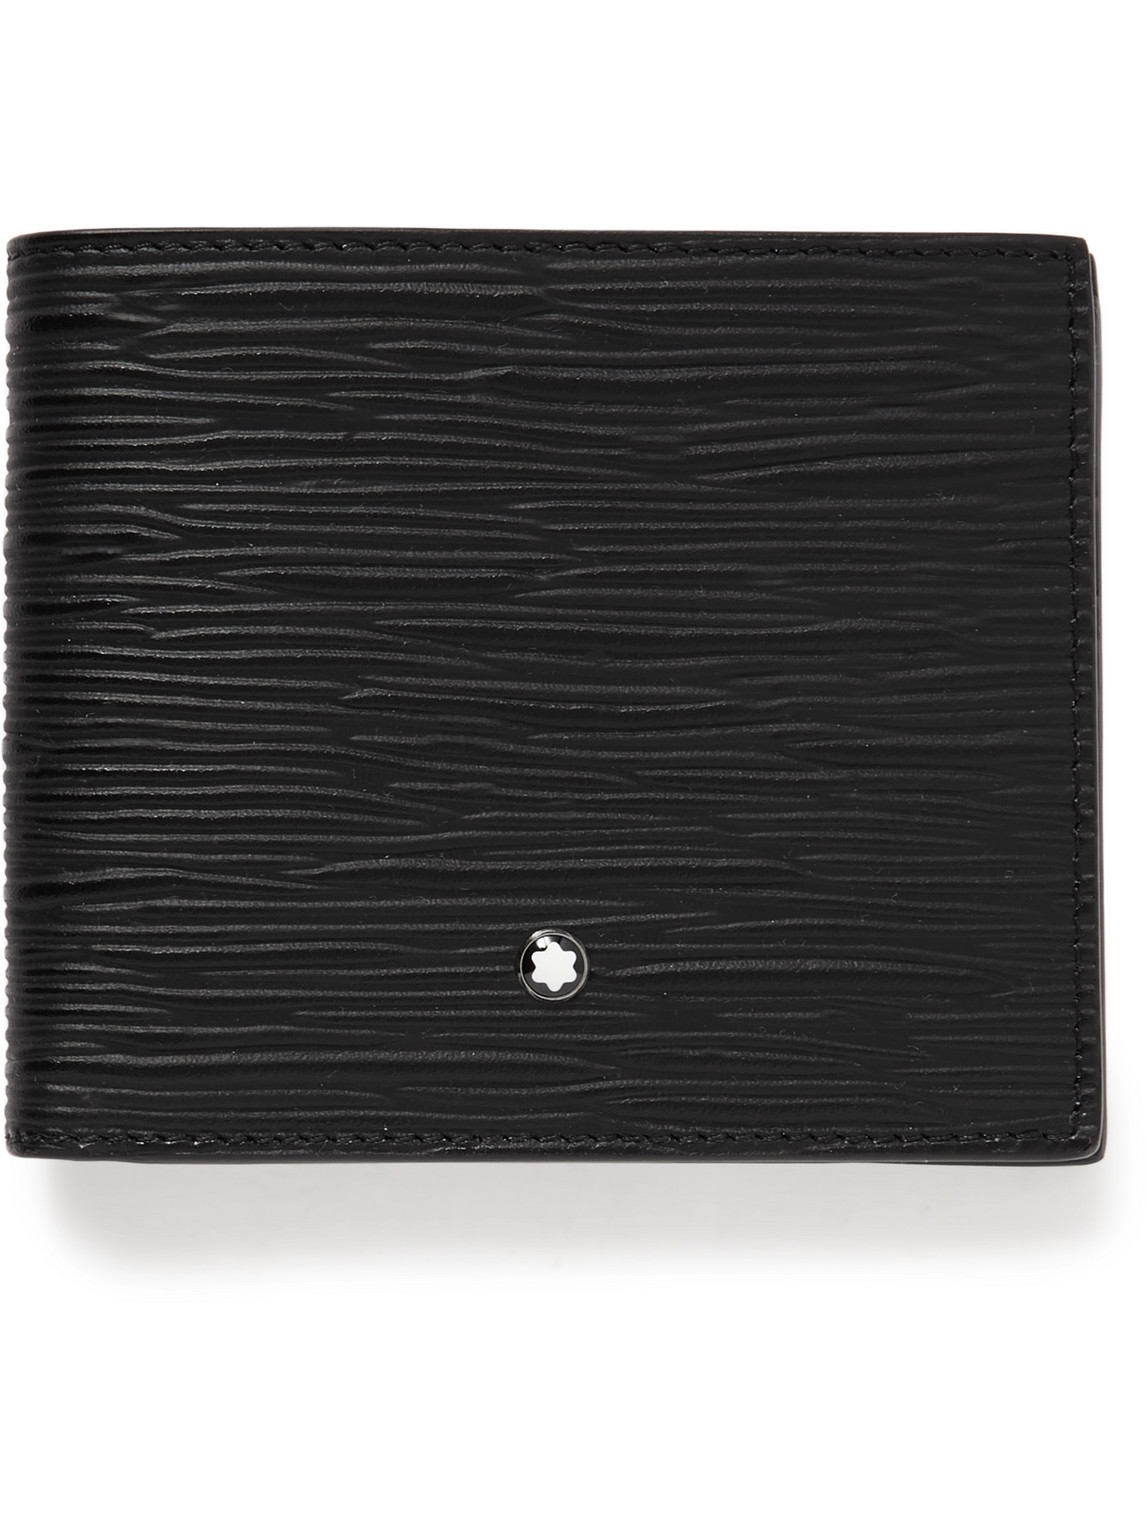 Montblanc Meisterstück 4810 Cross-grain Leather Billfold Wallet In Black